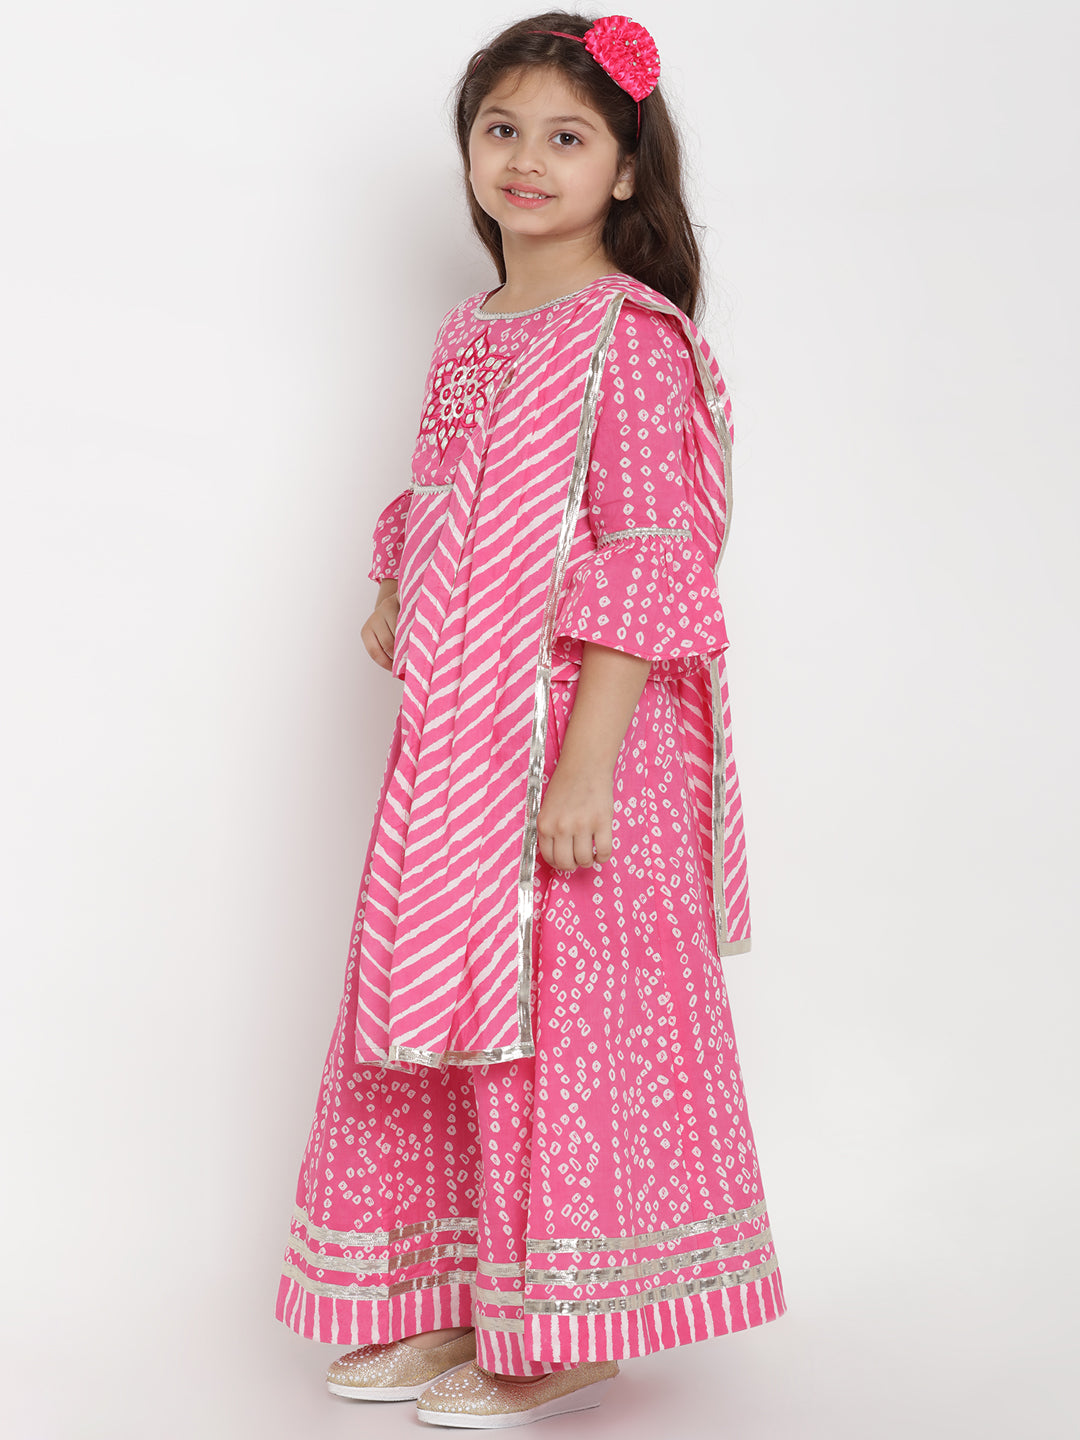 Pink Kurti Lehenga Dress For Wedding Function For Girls - Evilato